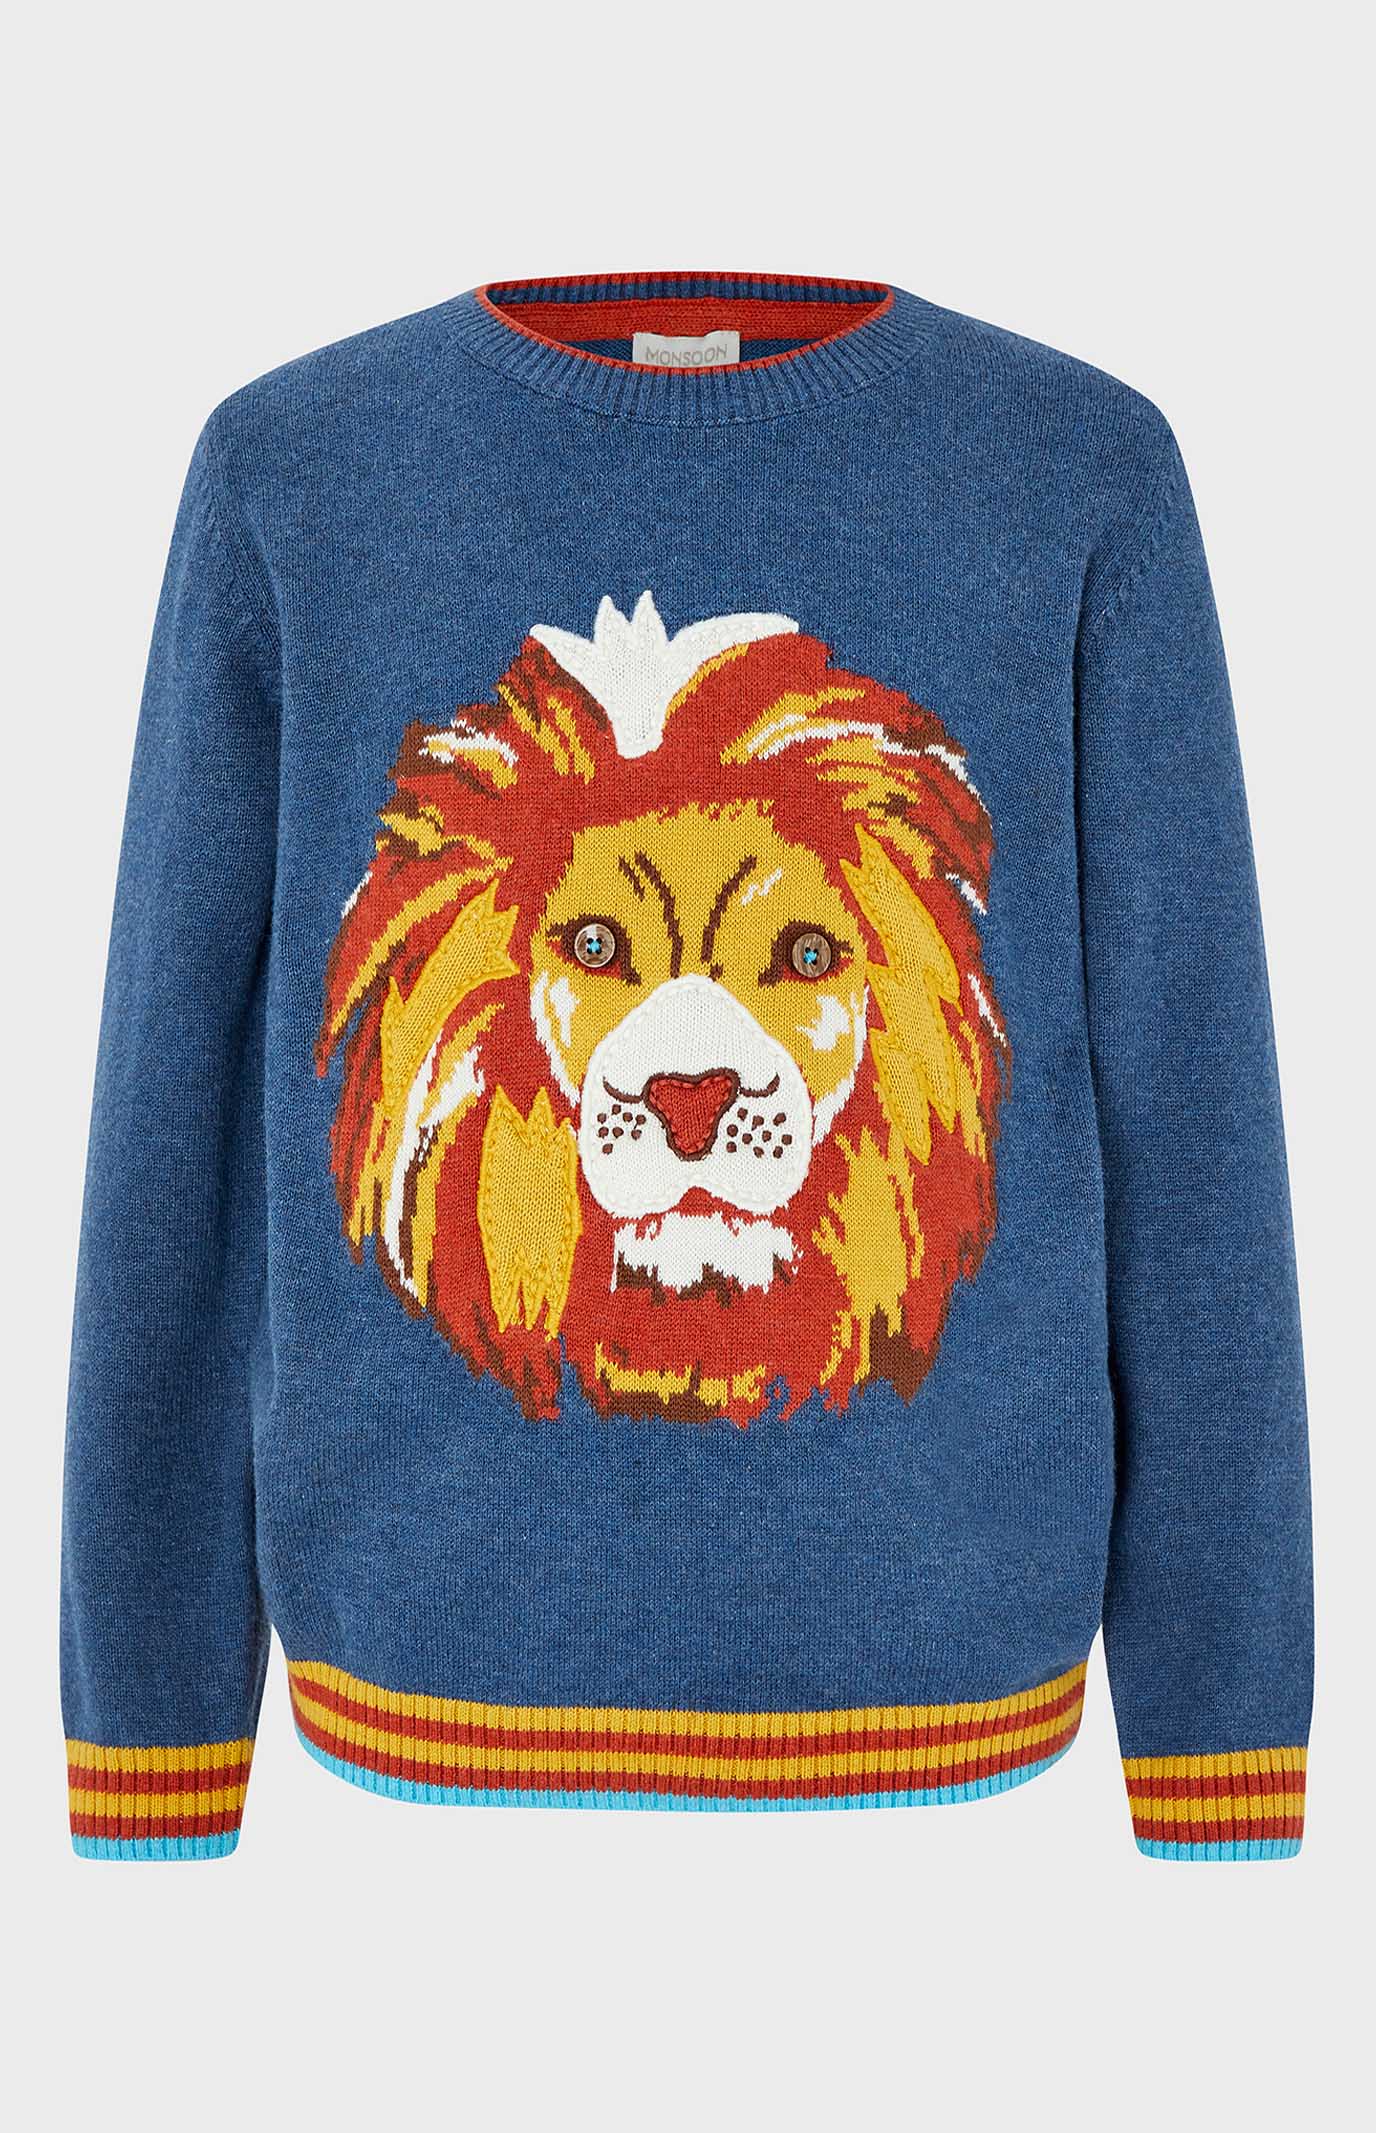 Детский голубой свитер LANDON LION KNITTED 1